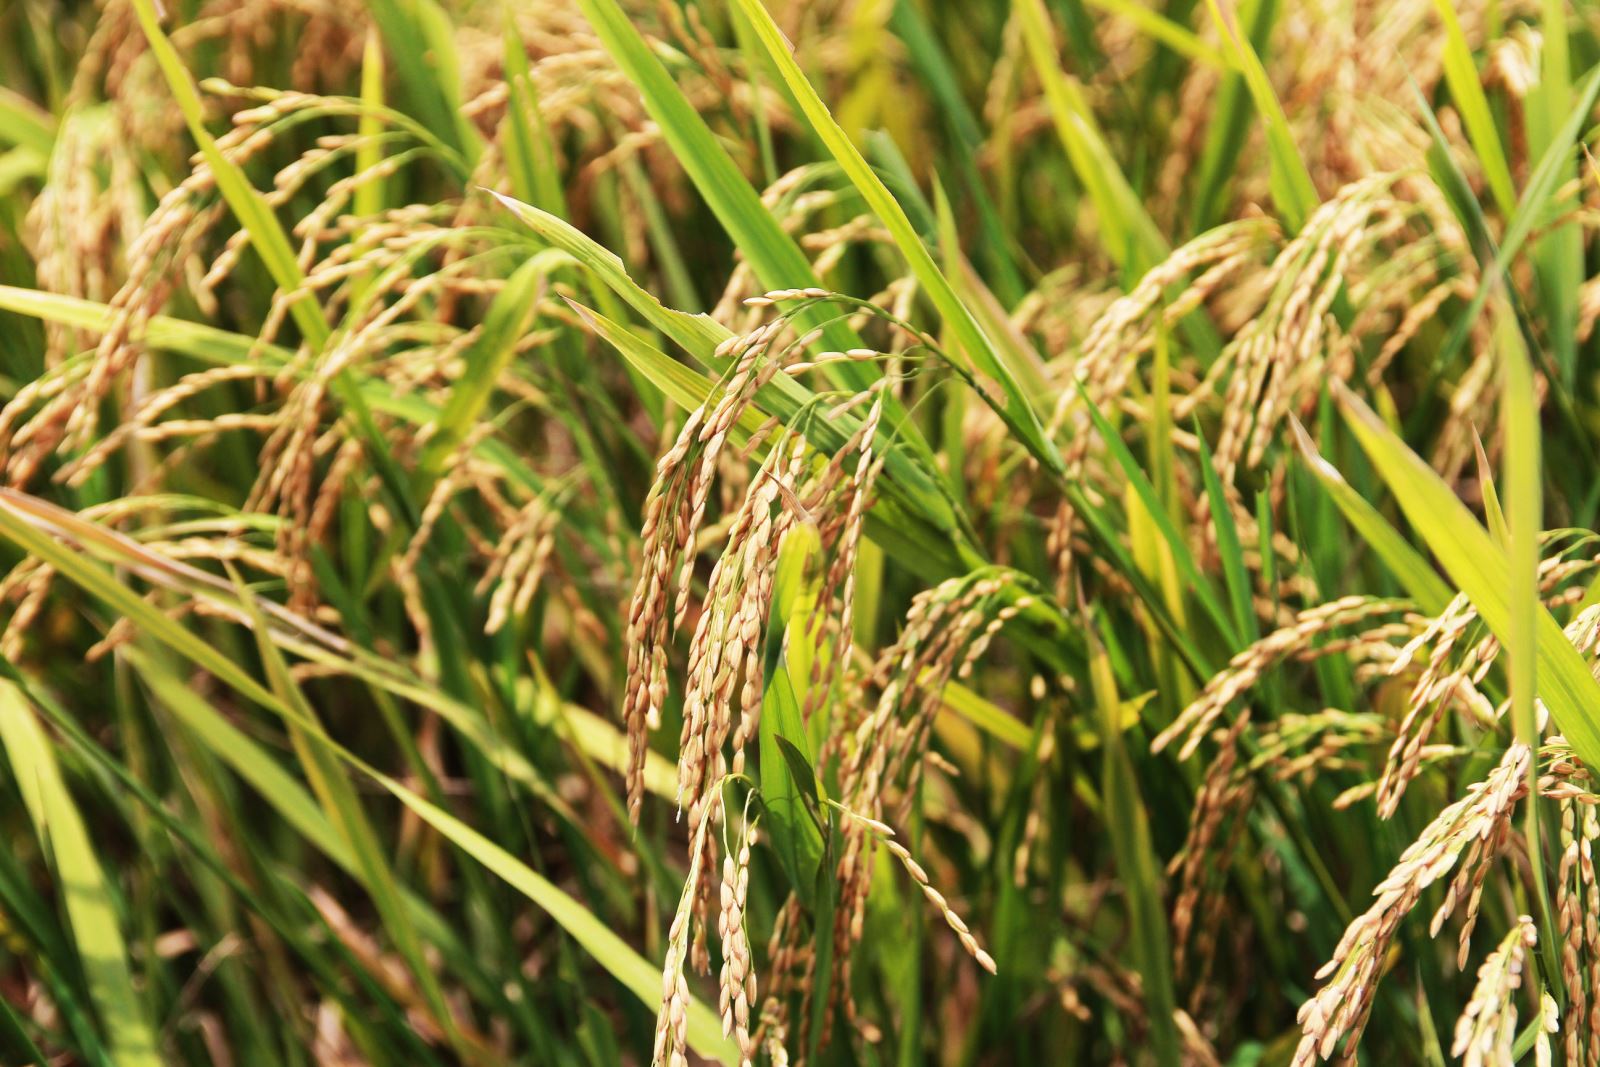 Lúa đã bắt đầu chín vàng trĩu hạt trên các cánh đồng ở nhiều địa phương như: Yên Thành, Quỳnh Lưu, Diễn Châu,..